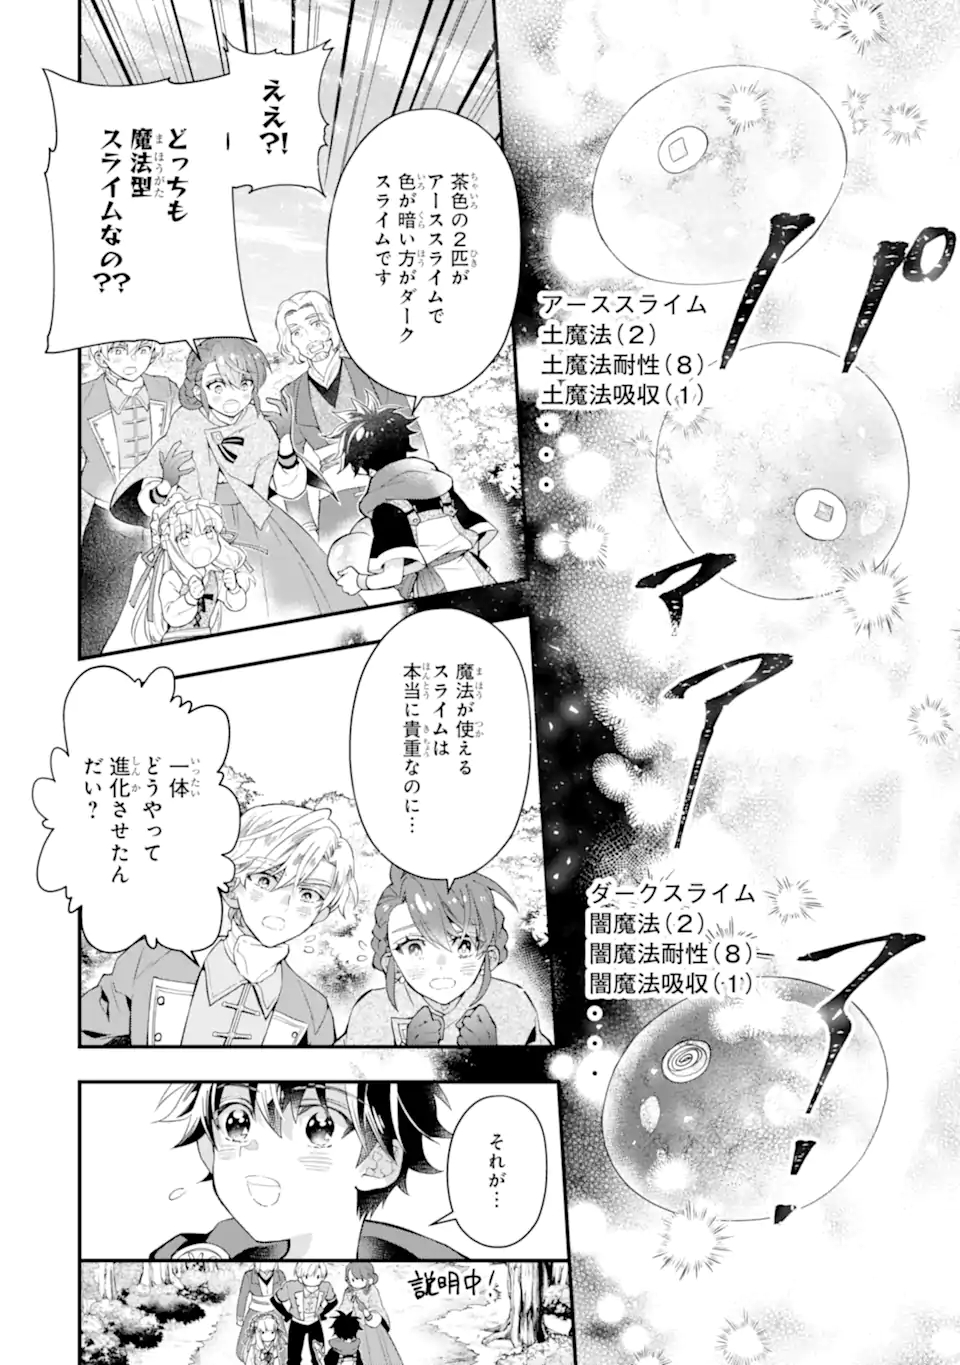 Kamitachi ni Hirowareta Otoko Manga - Chapter 20 - Manga Rock Team - Read  Manga Online For Free